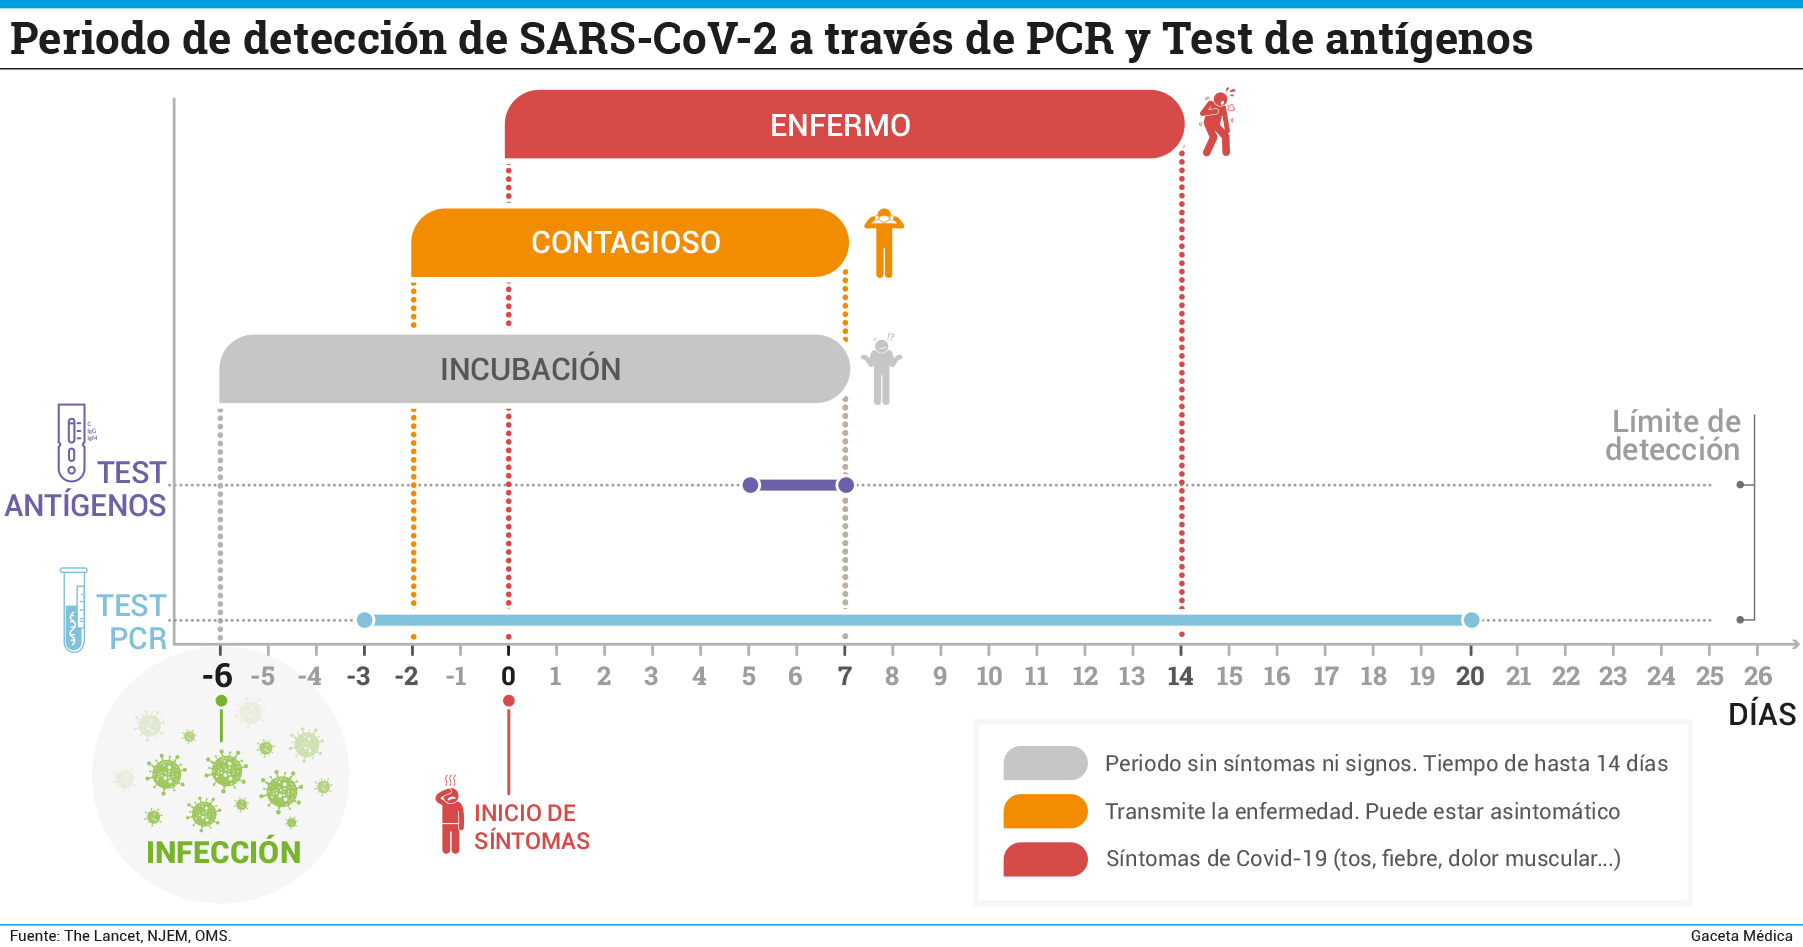 Periodo de detecci%C3%B3n de SARS CoV 2 a trav%C3%A9s de PCR y Test de ant%C3%ADgenos